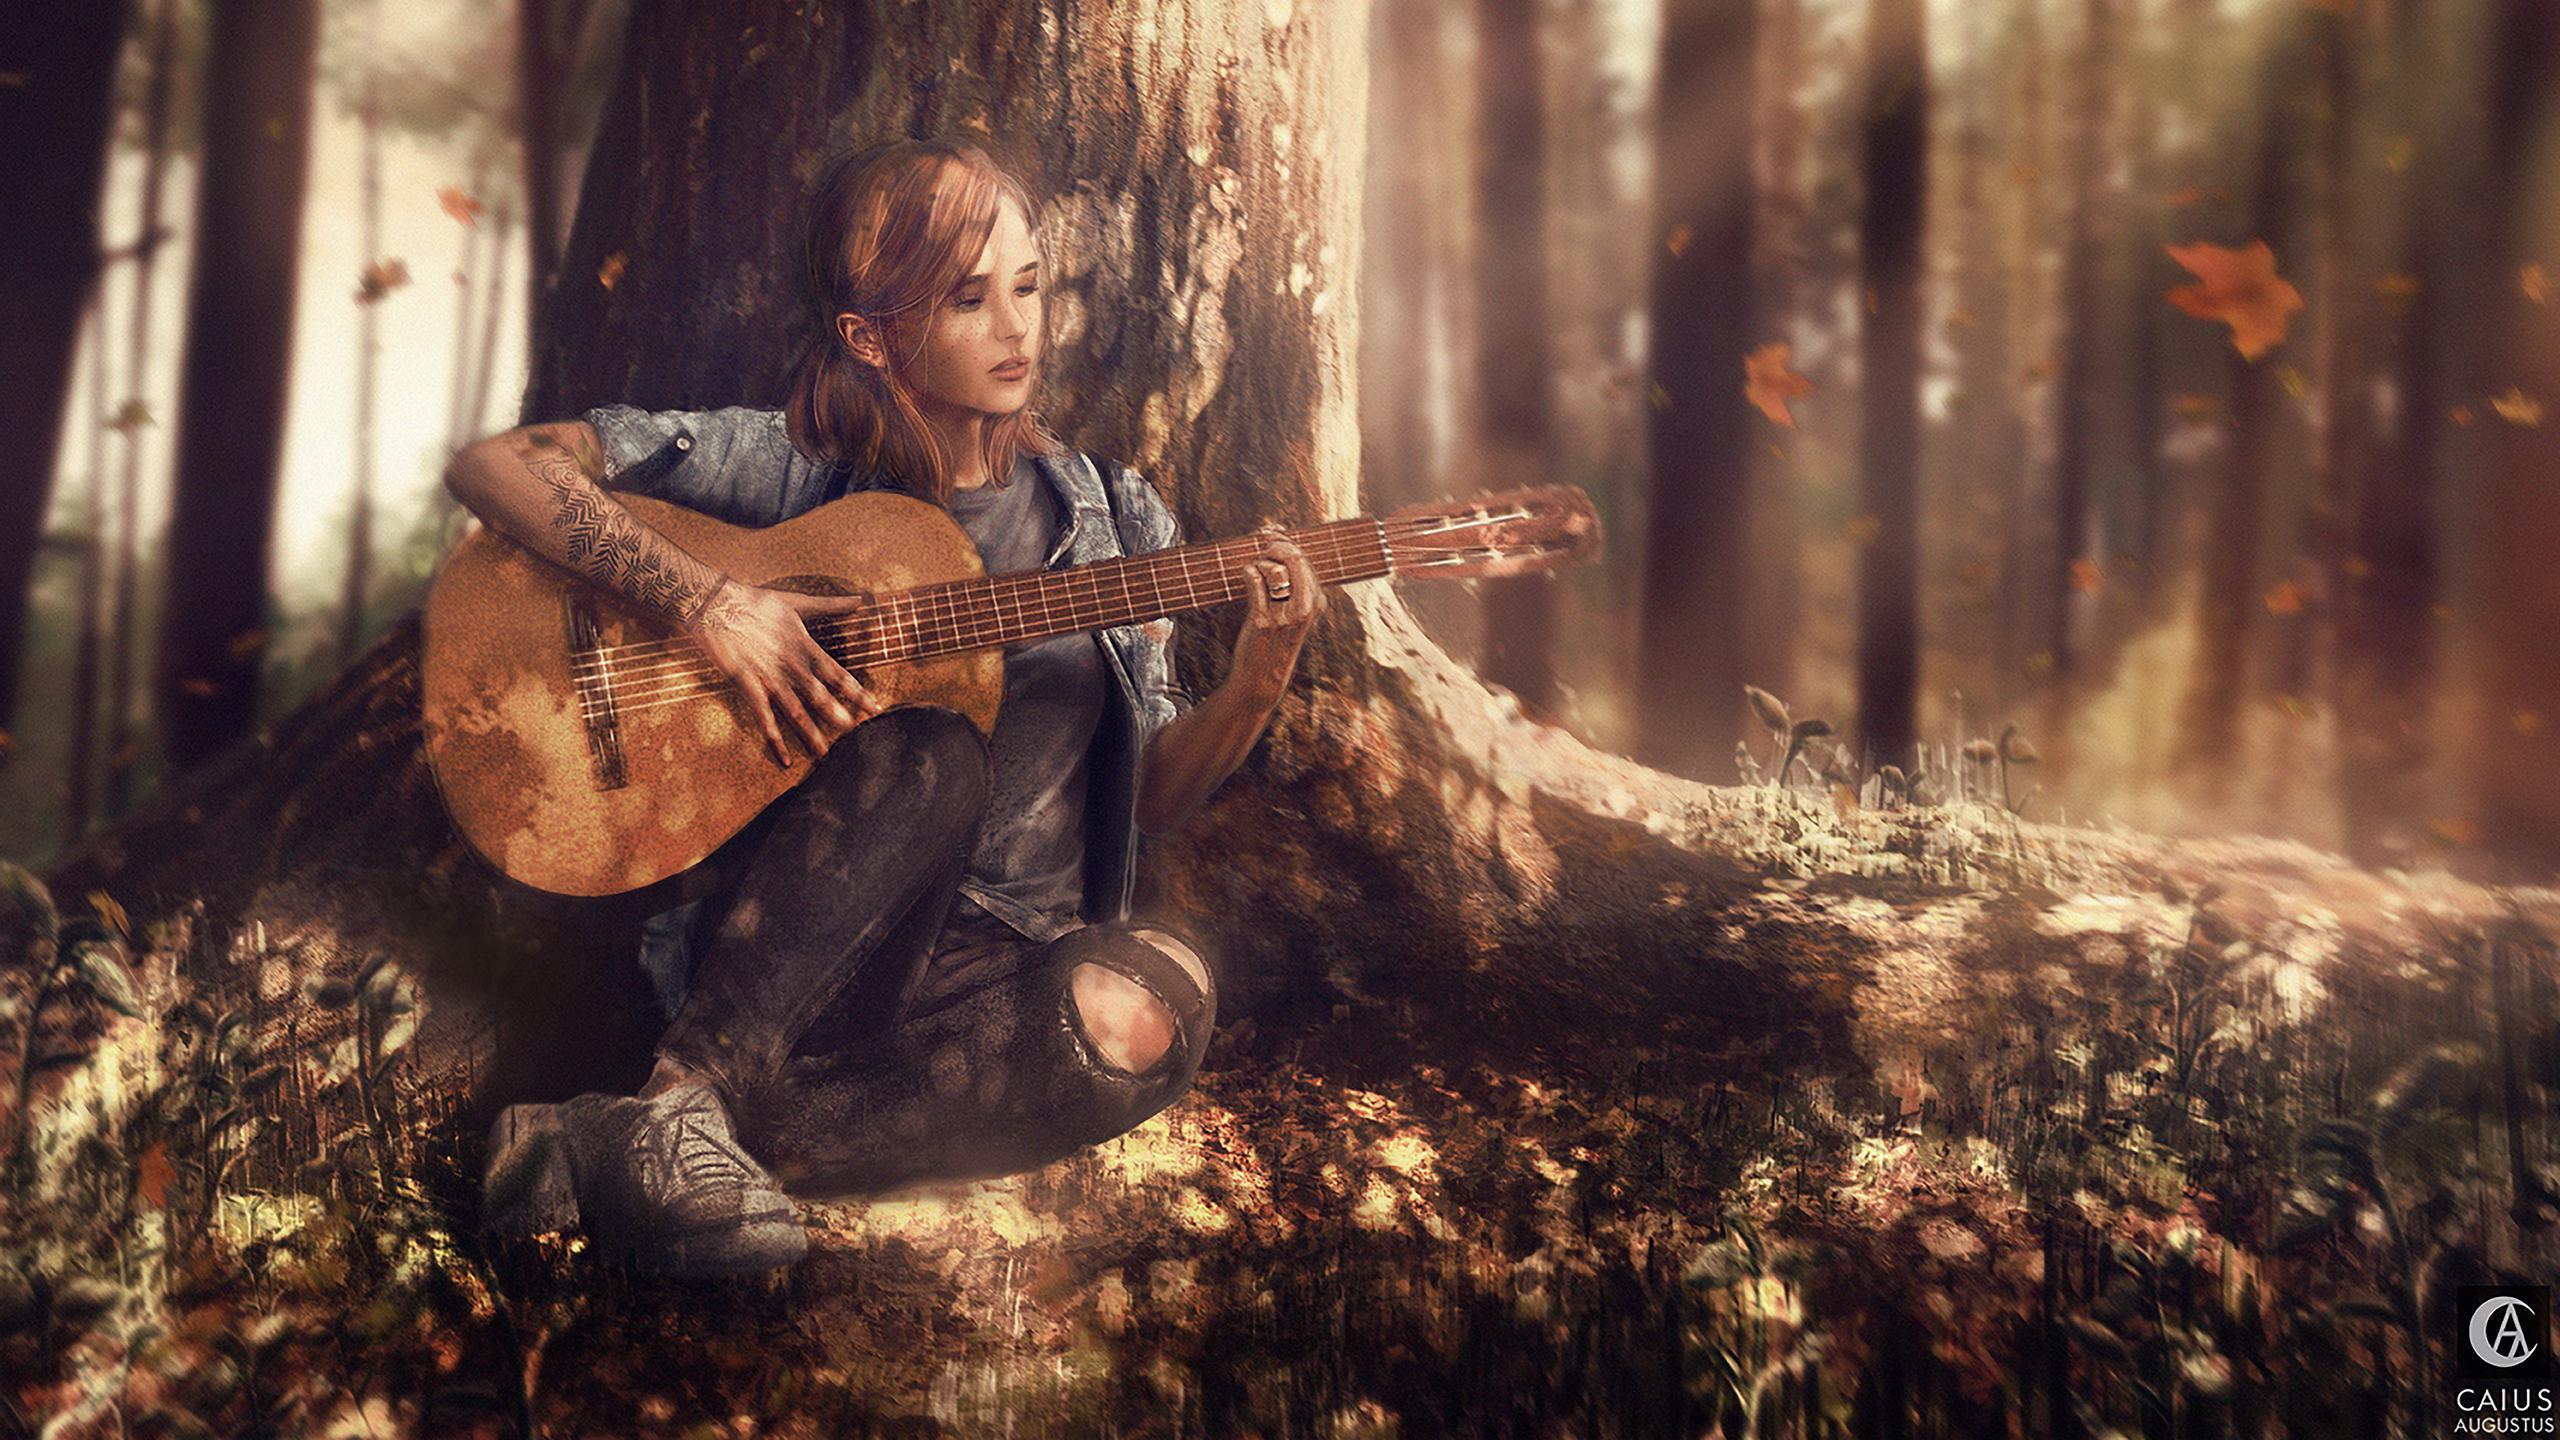 Ellie The Last of Us Wallpapers - Top Free Ellie The Last of Us ...